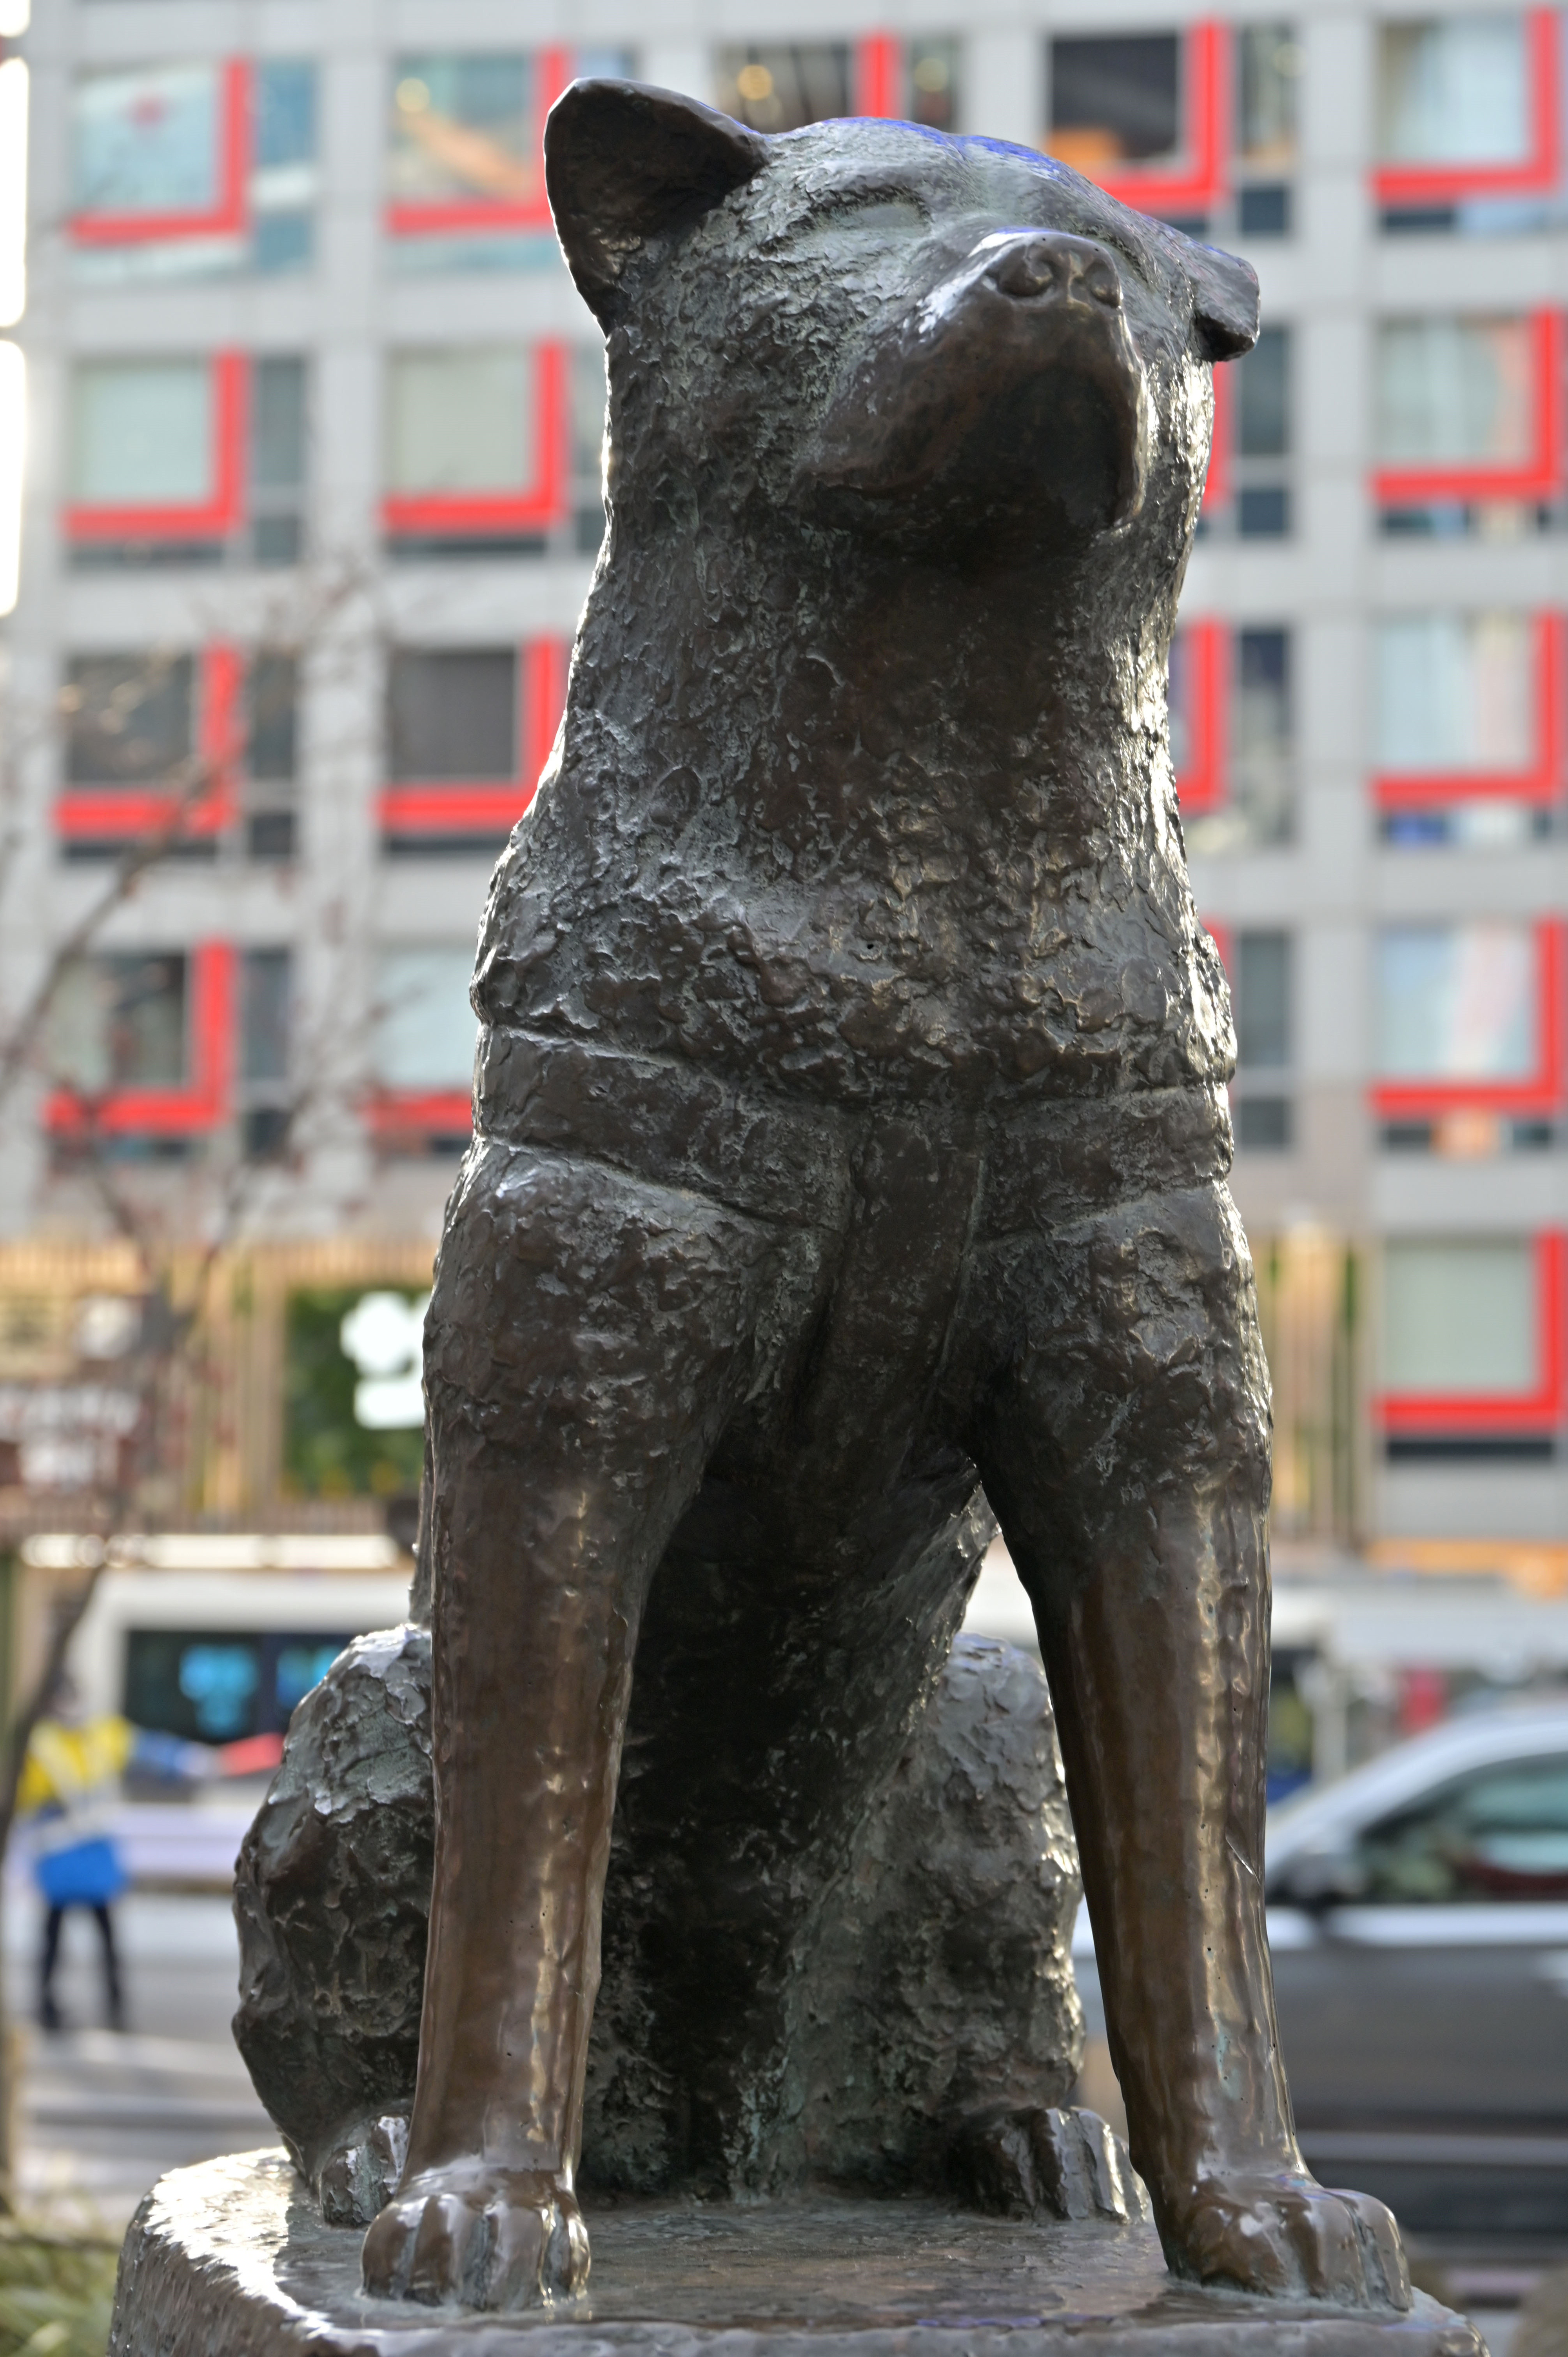 銅像の前に立つ忠犬の像。